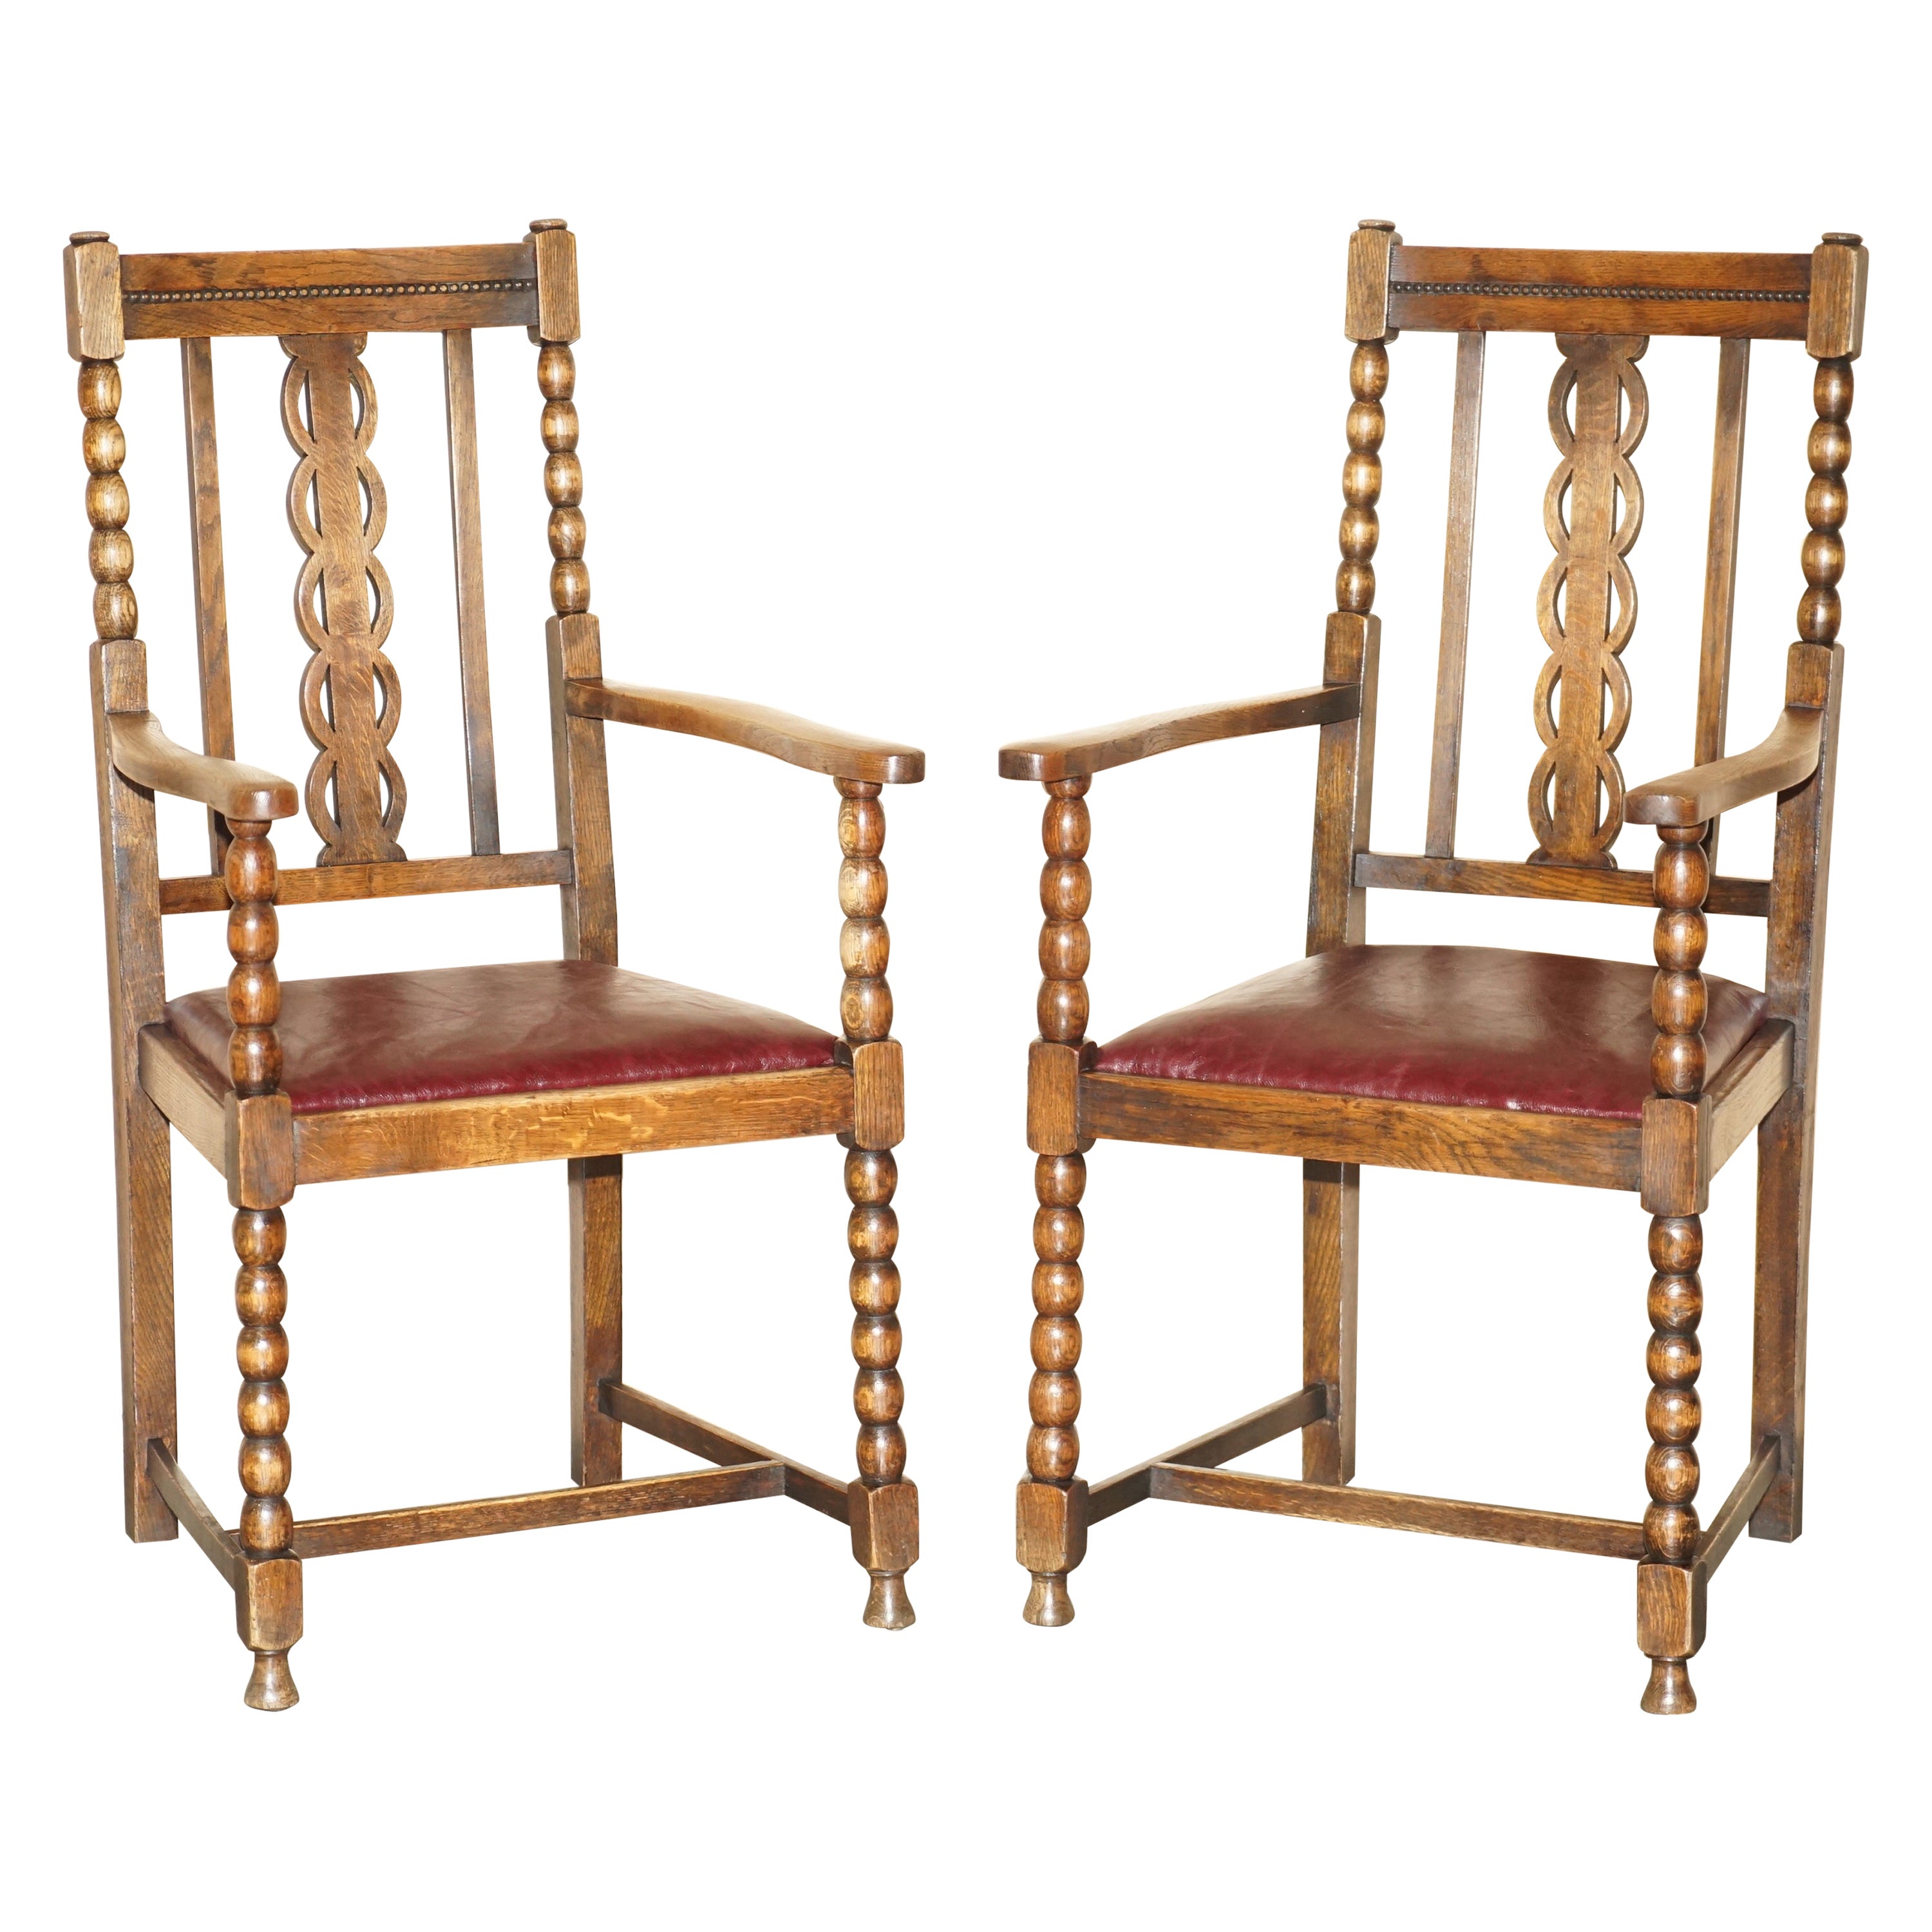 Paire de fauteuils anciens en chêne écossais tourné aux fuseaux et sculpté, datant de 1900 et de l'époque édouardienne